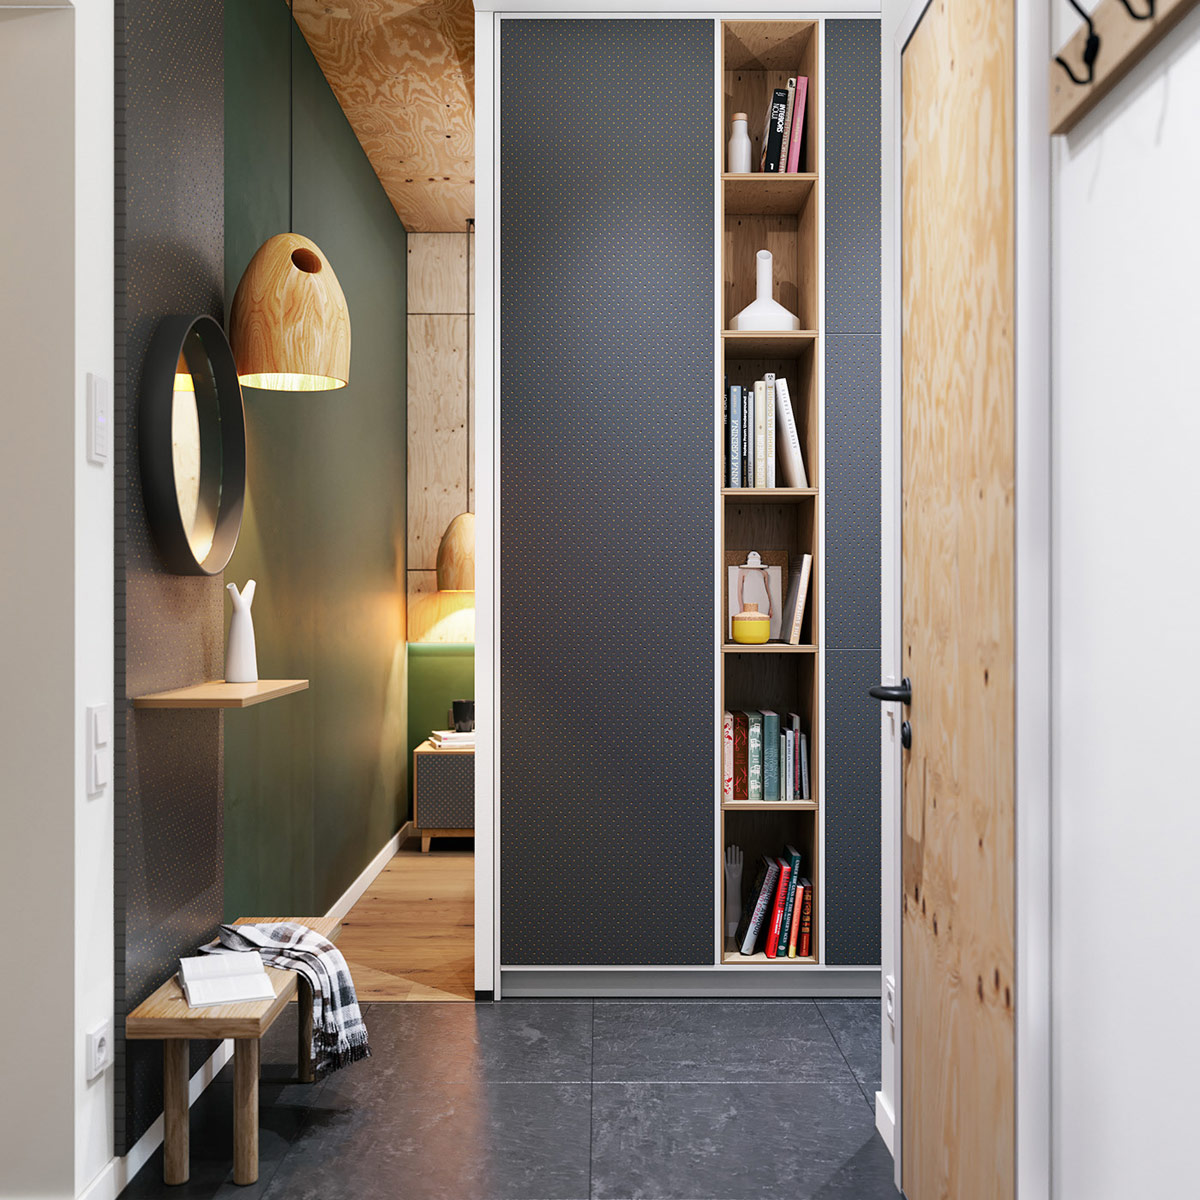 hình ảnh bức tường màu xanh lá là phần mở rộng của phòng ngủ căn hộ nhỏ